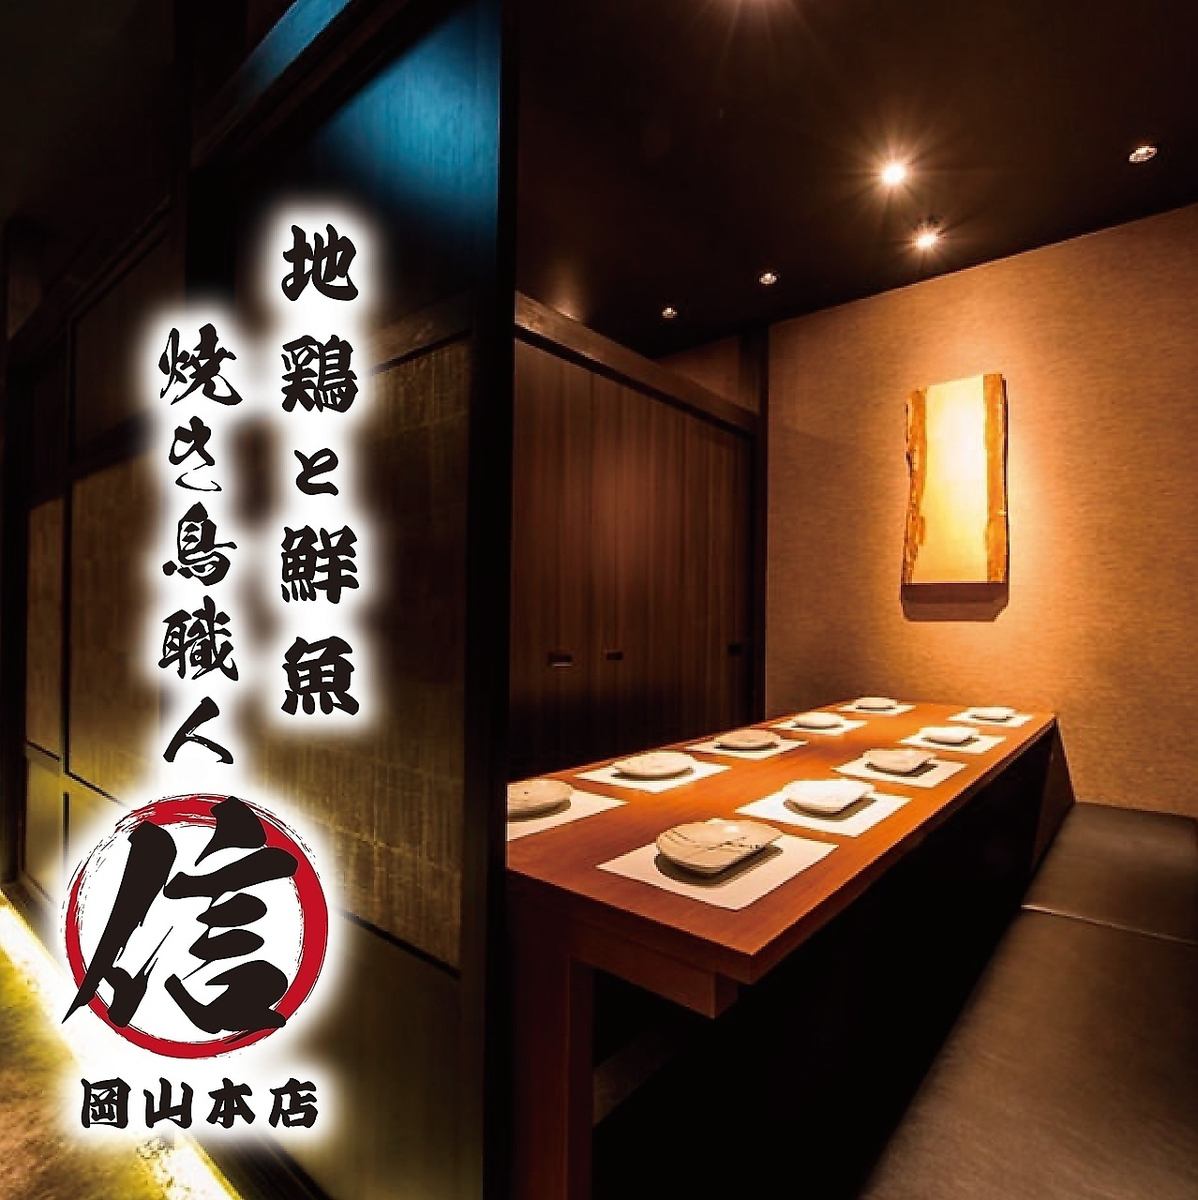 ★오카야마역에 NEW OPEN☆완전 개인실과 야키토리 장인에 의한 일식 향토 요리를 즐겨 주세요♪